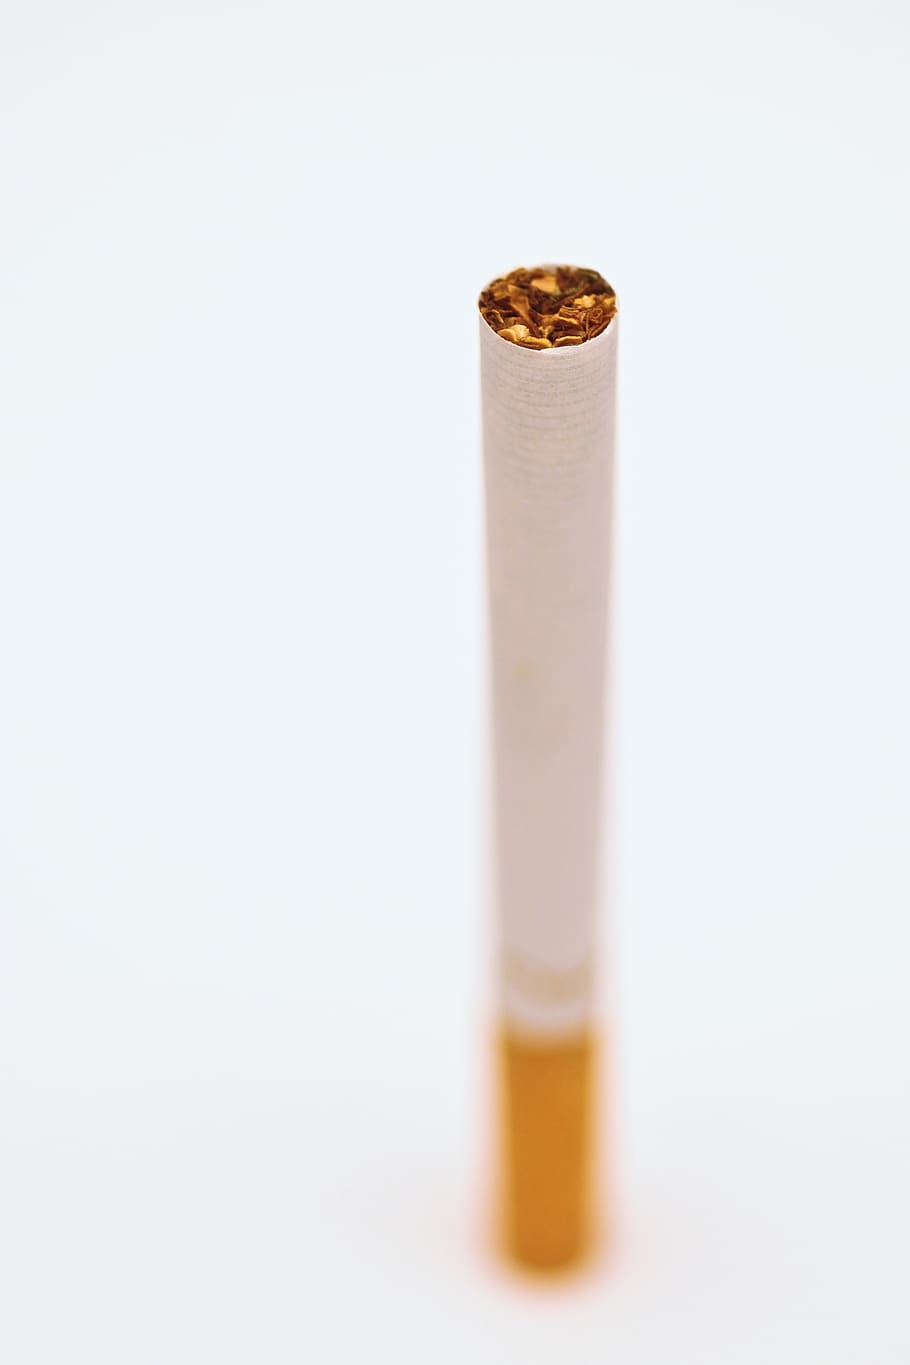 cigarrillo, tabaco, humo, fondo blanco, Foto de estudio, lápiz, en interiores, sin personas, un solo objeto, borrador